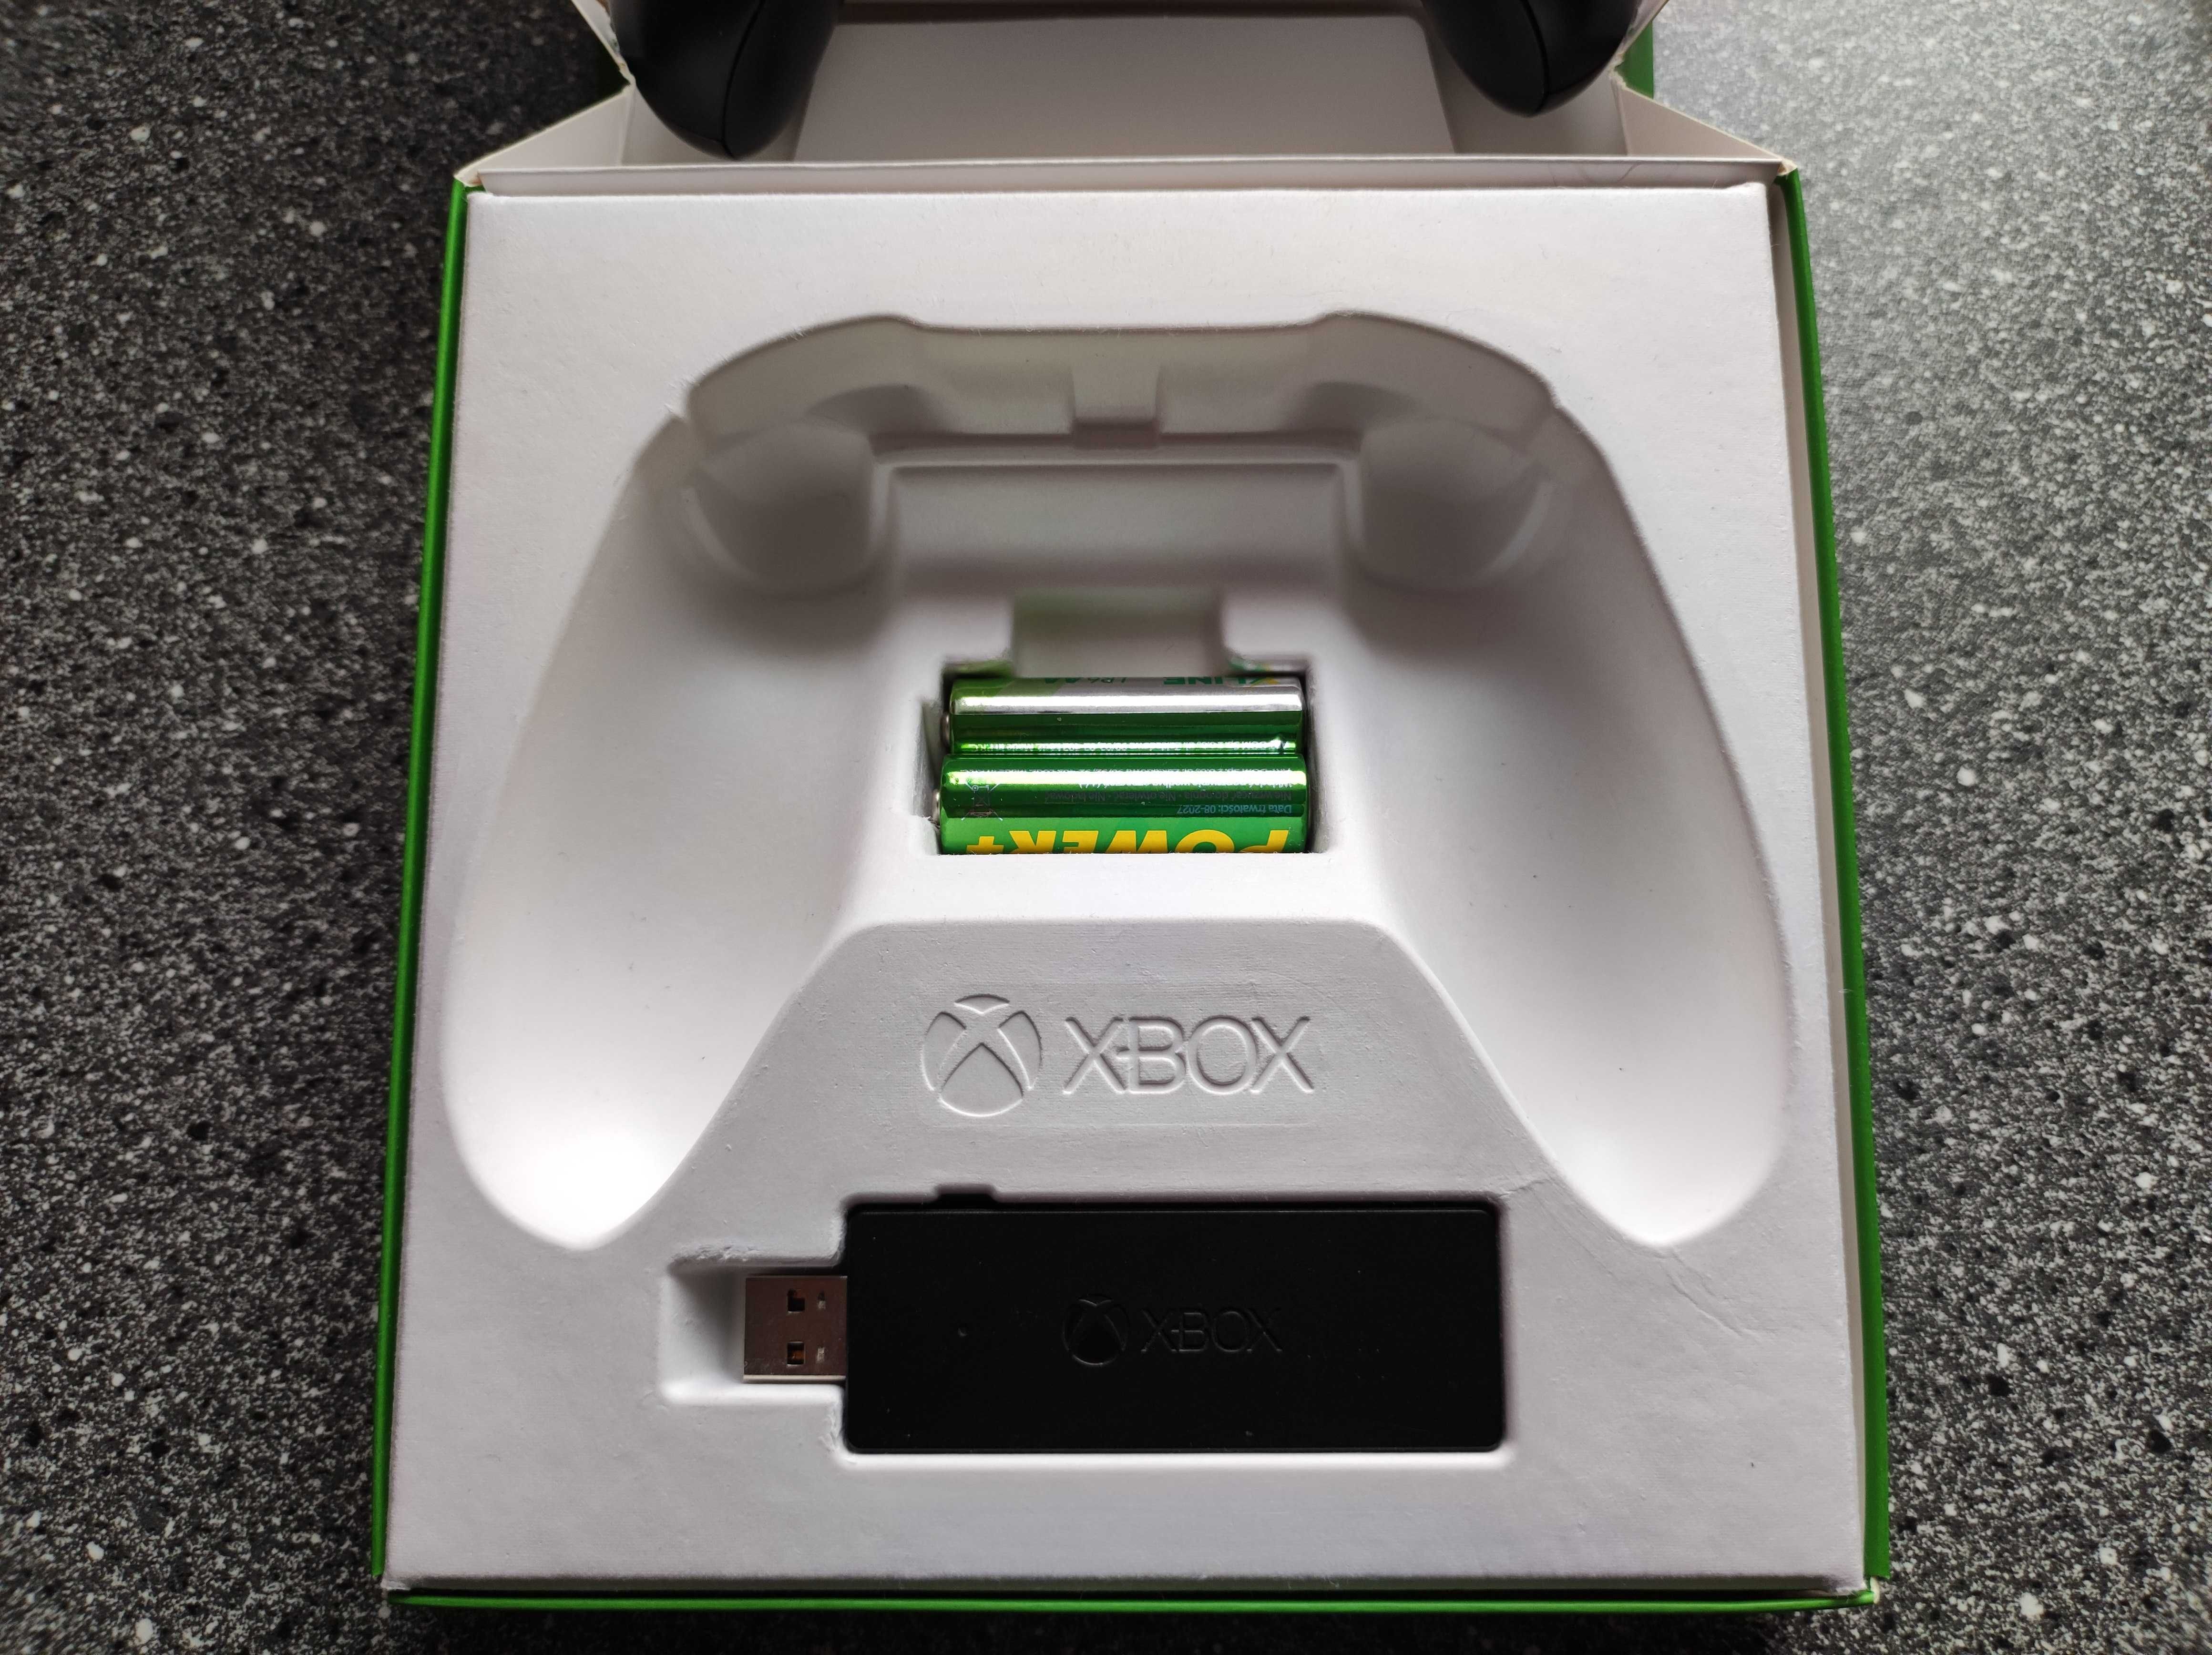 Pad kontroler do PC i Xbox One czarny + adapter stan idealny pudełko